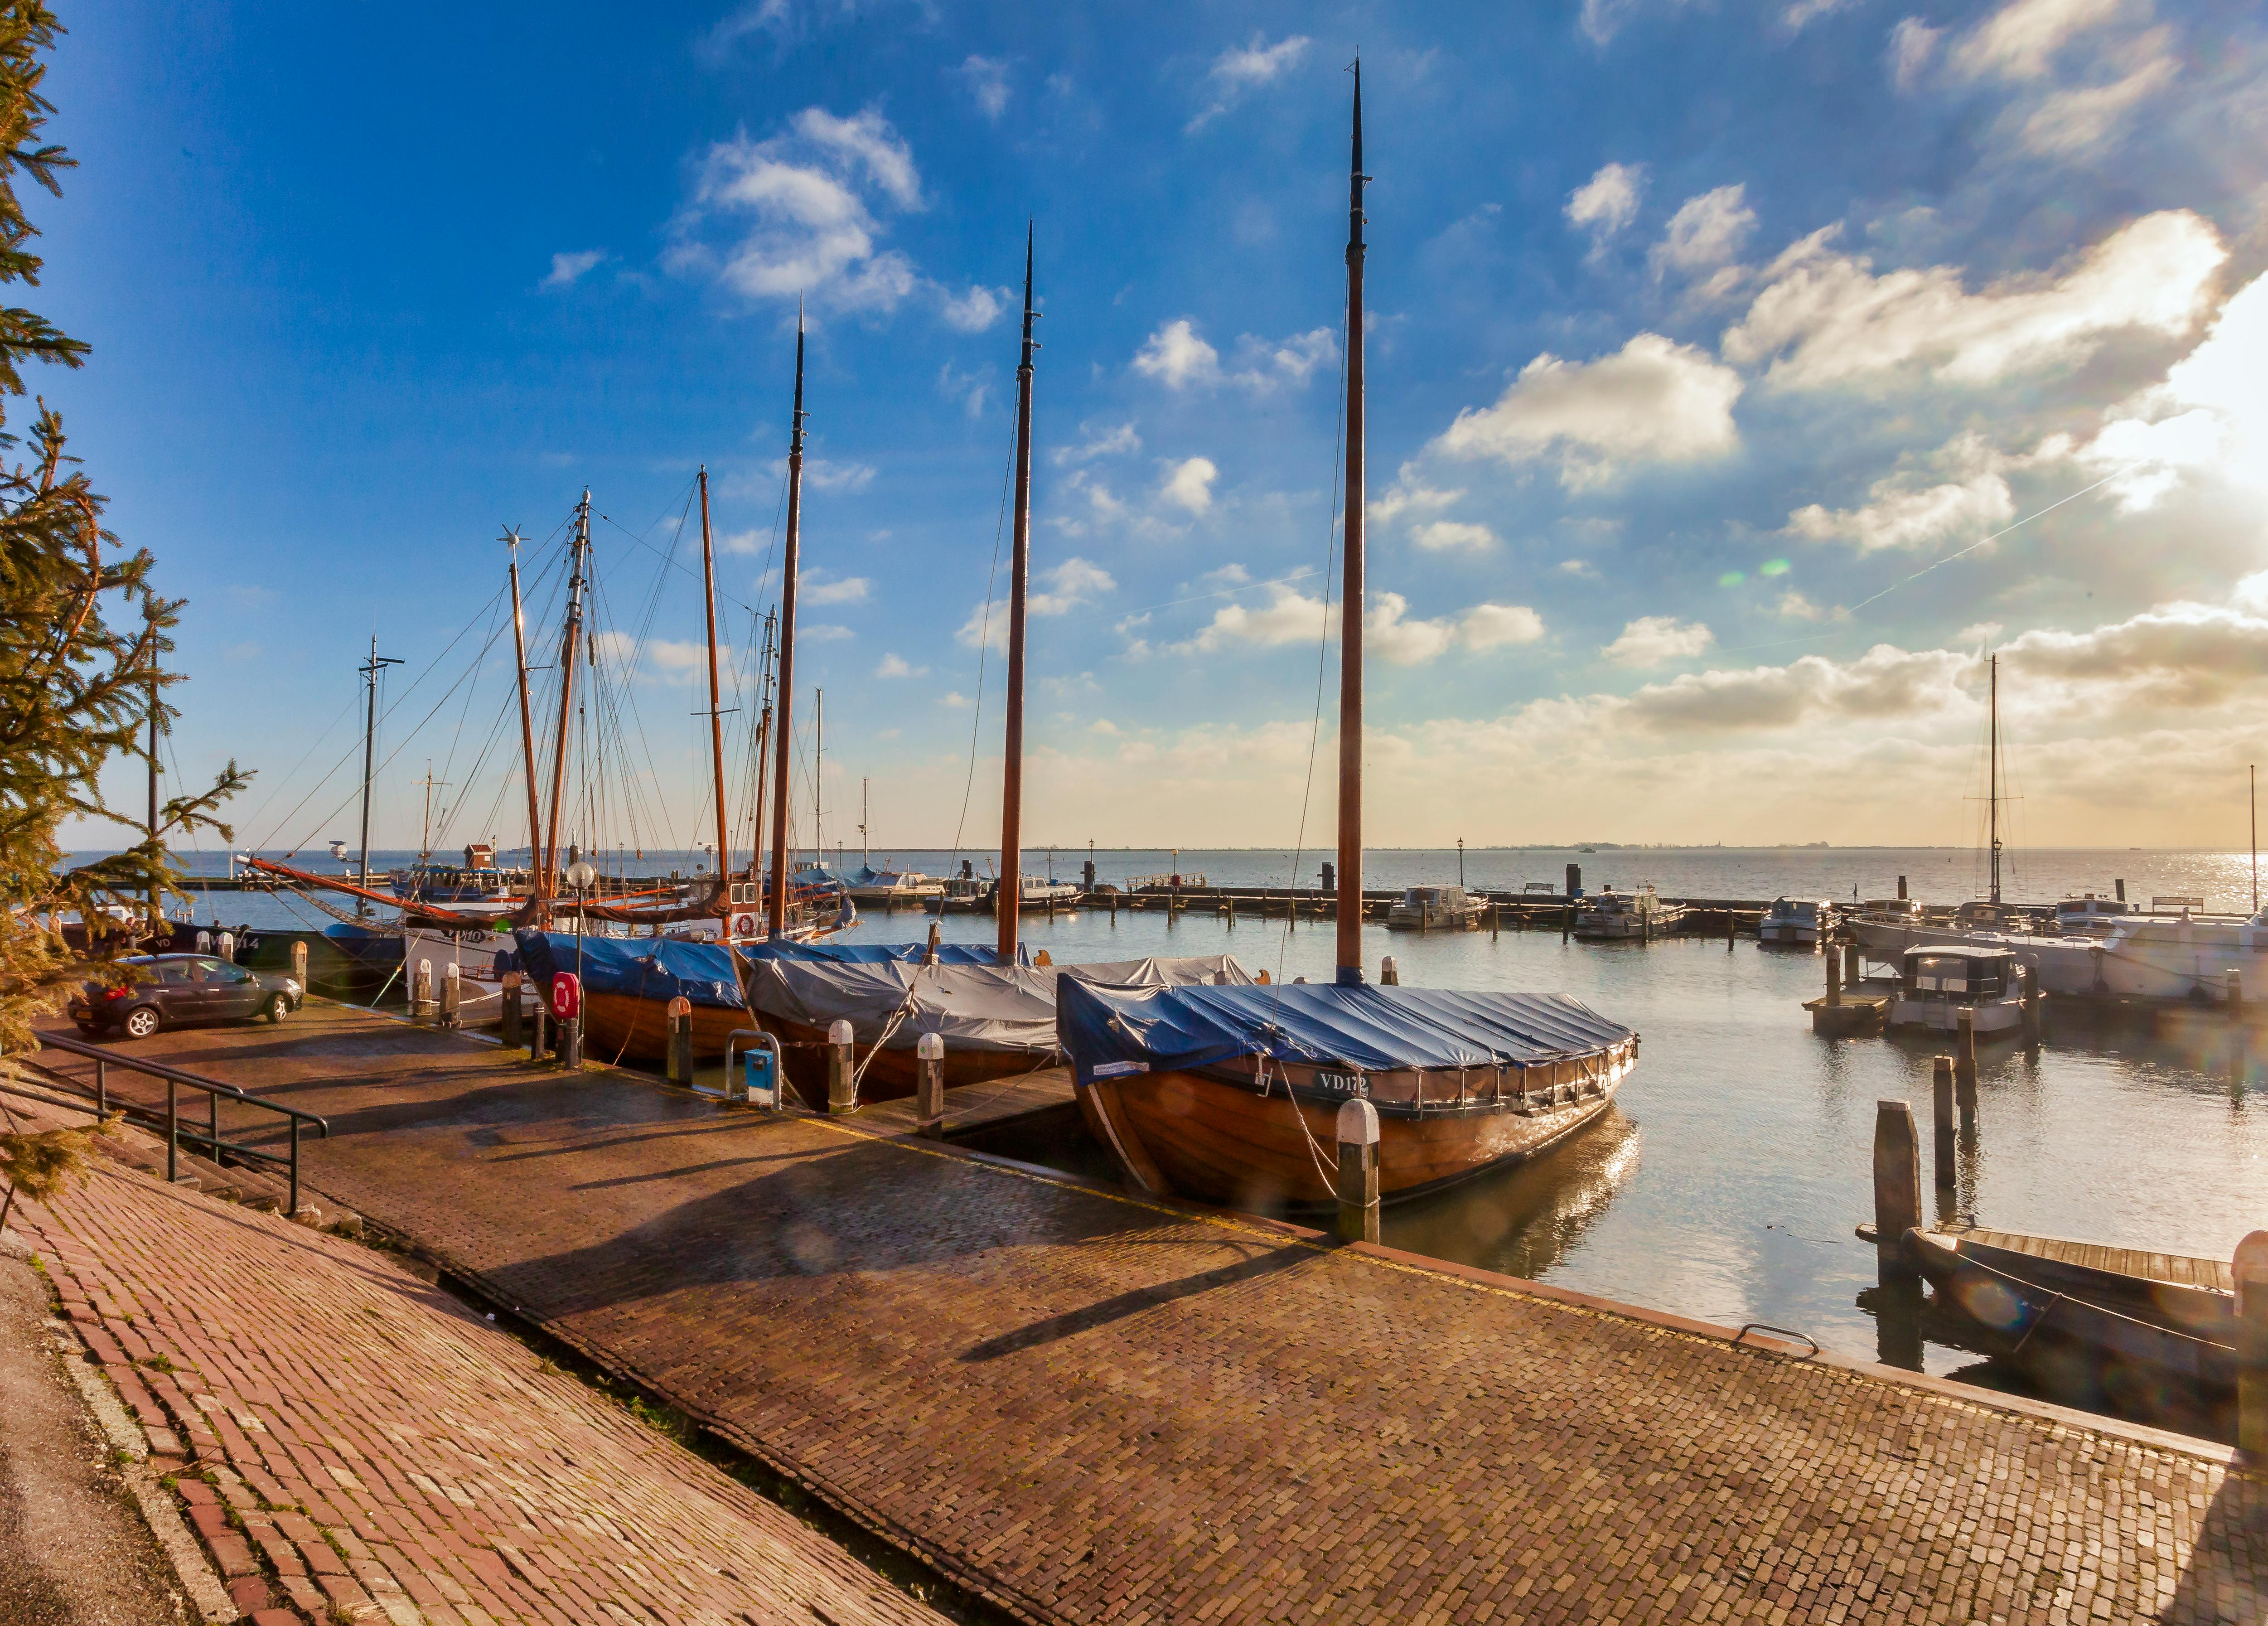 Boats Near Dock Under Gray Sky · Free Stock Photo